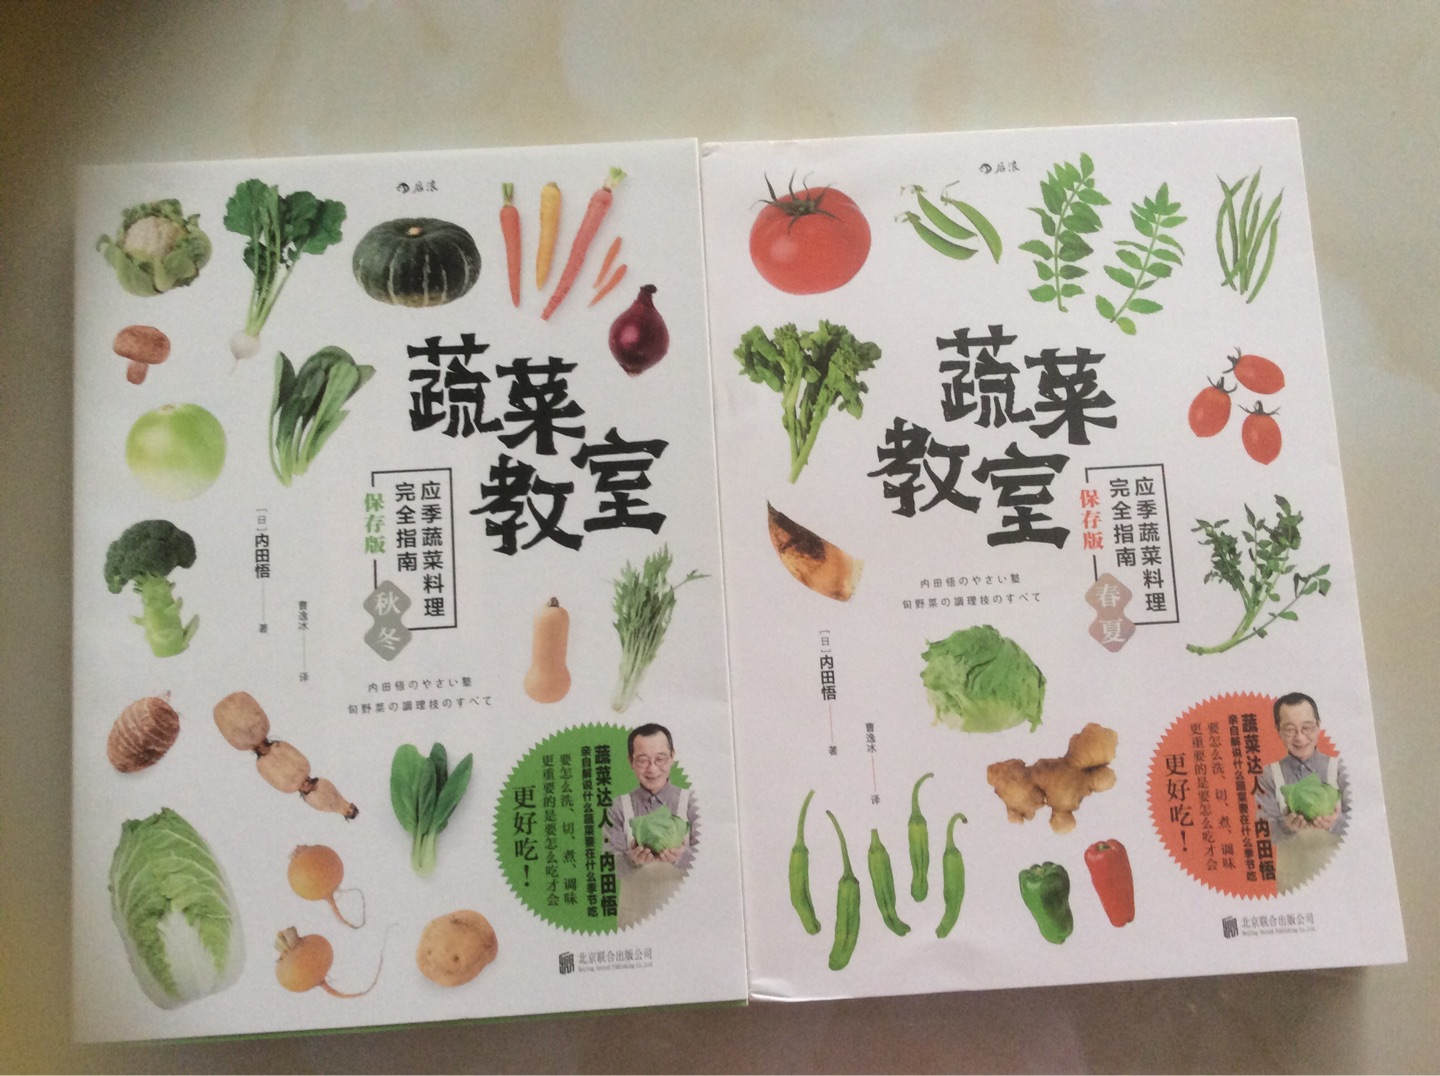 这本书质量不错，全彩页，蔬菜很丰富，做法细致，是一本食材制作的实用参考书。